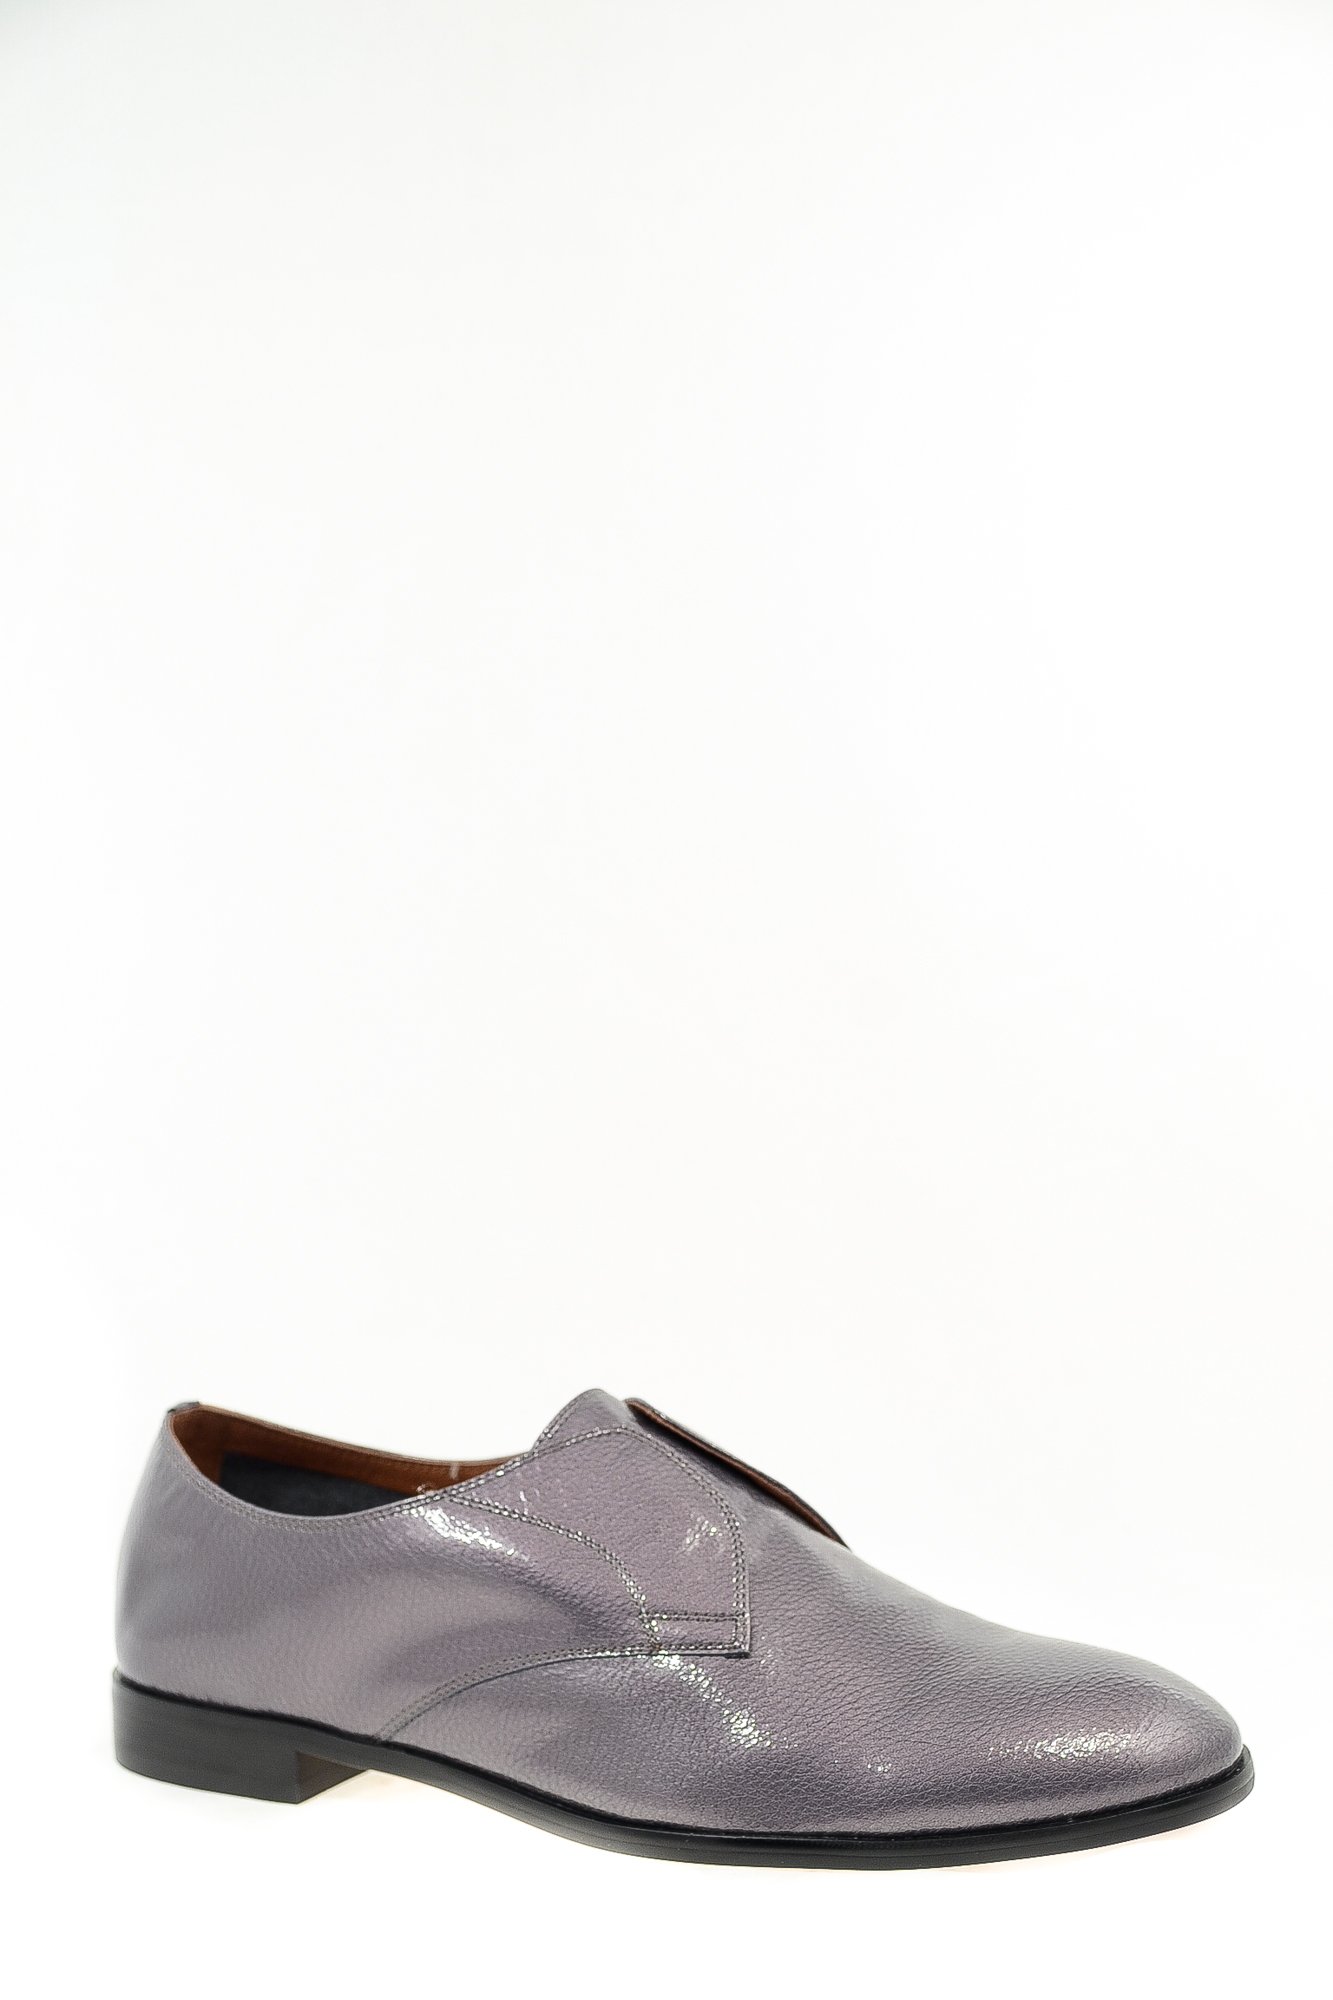 Туфли натуральный лак Melanes J668S-1-10 цвет серебряный.